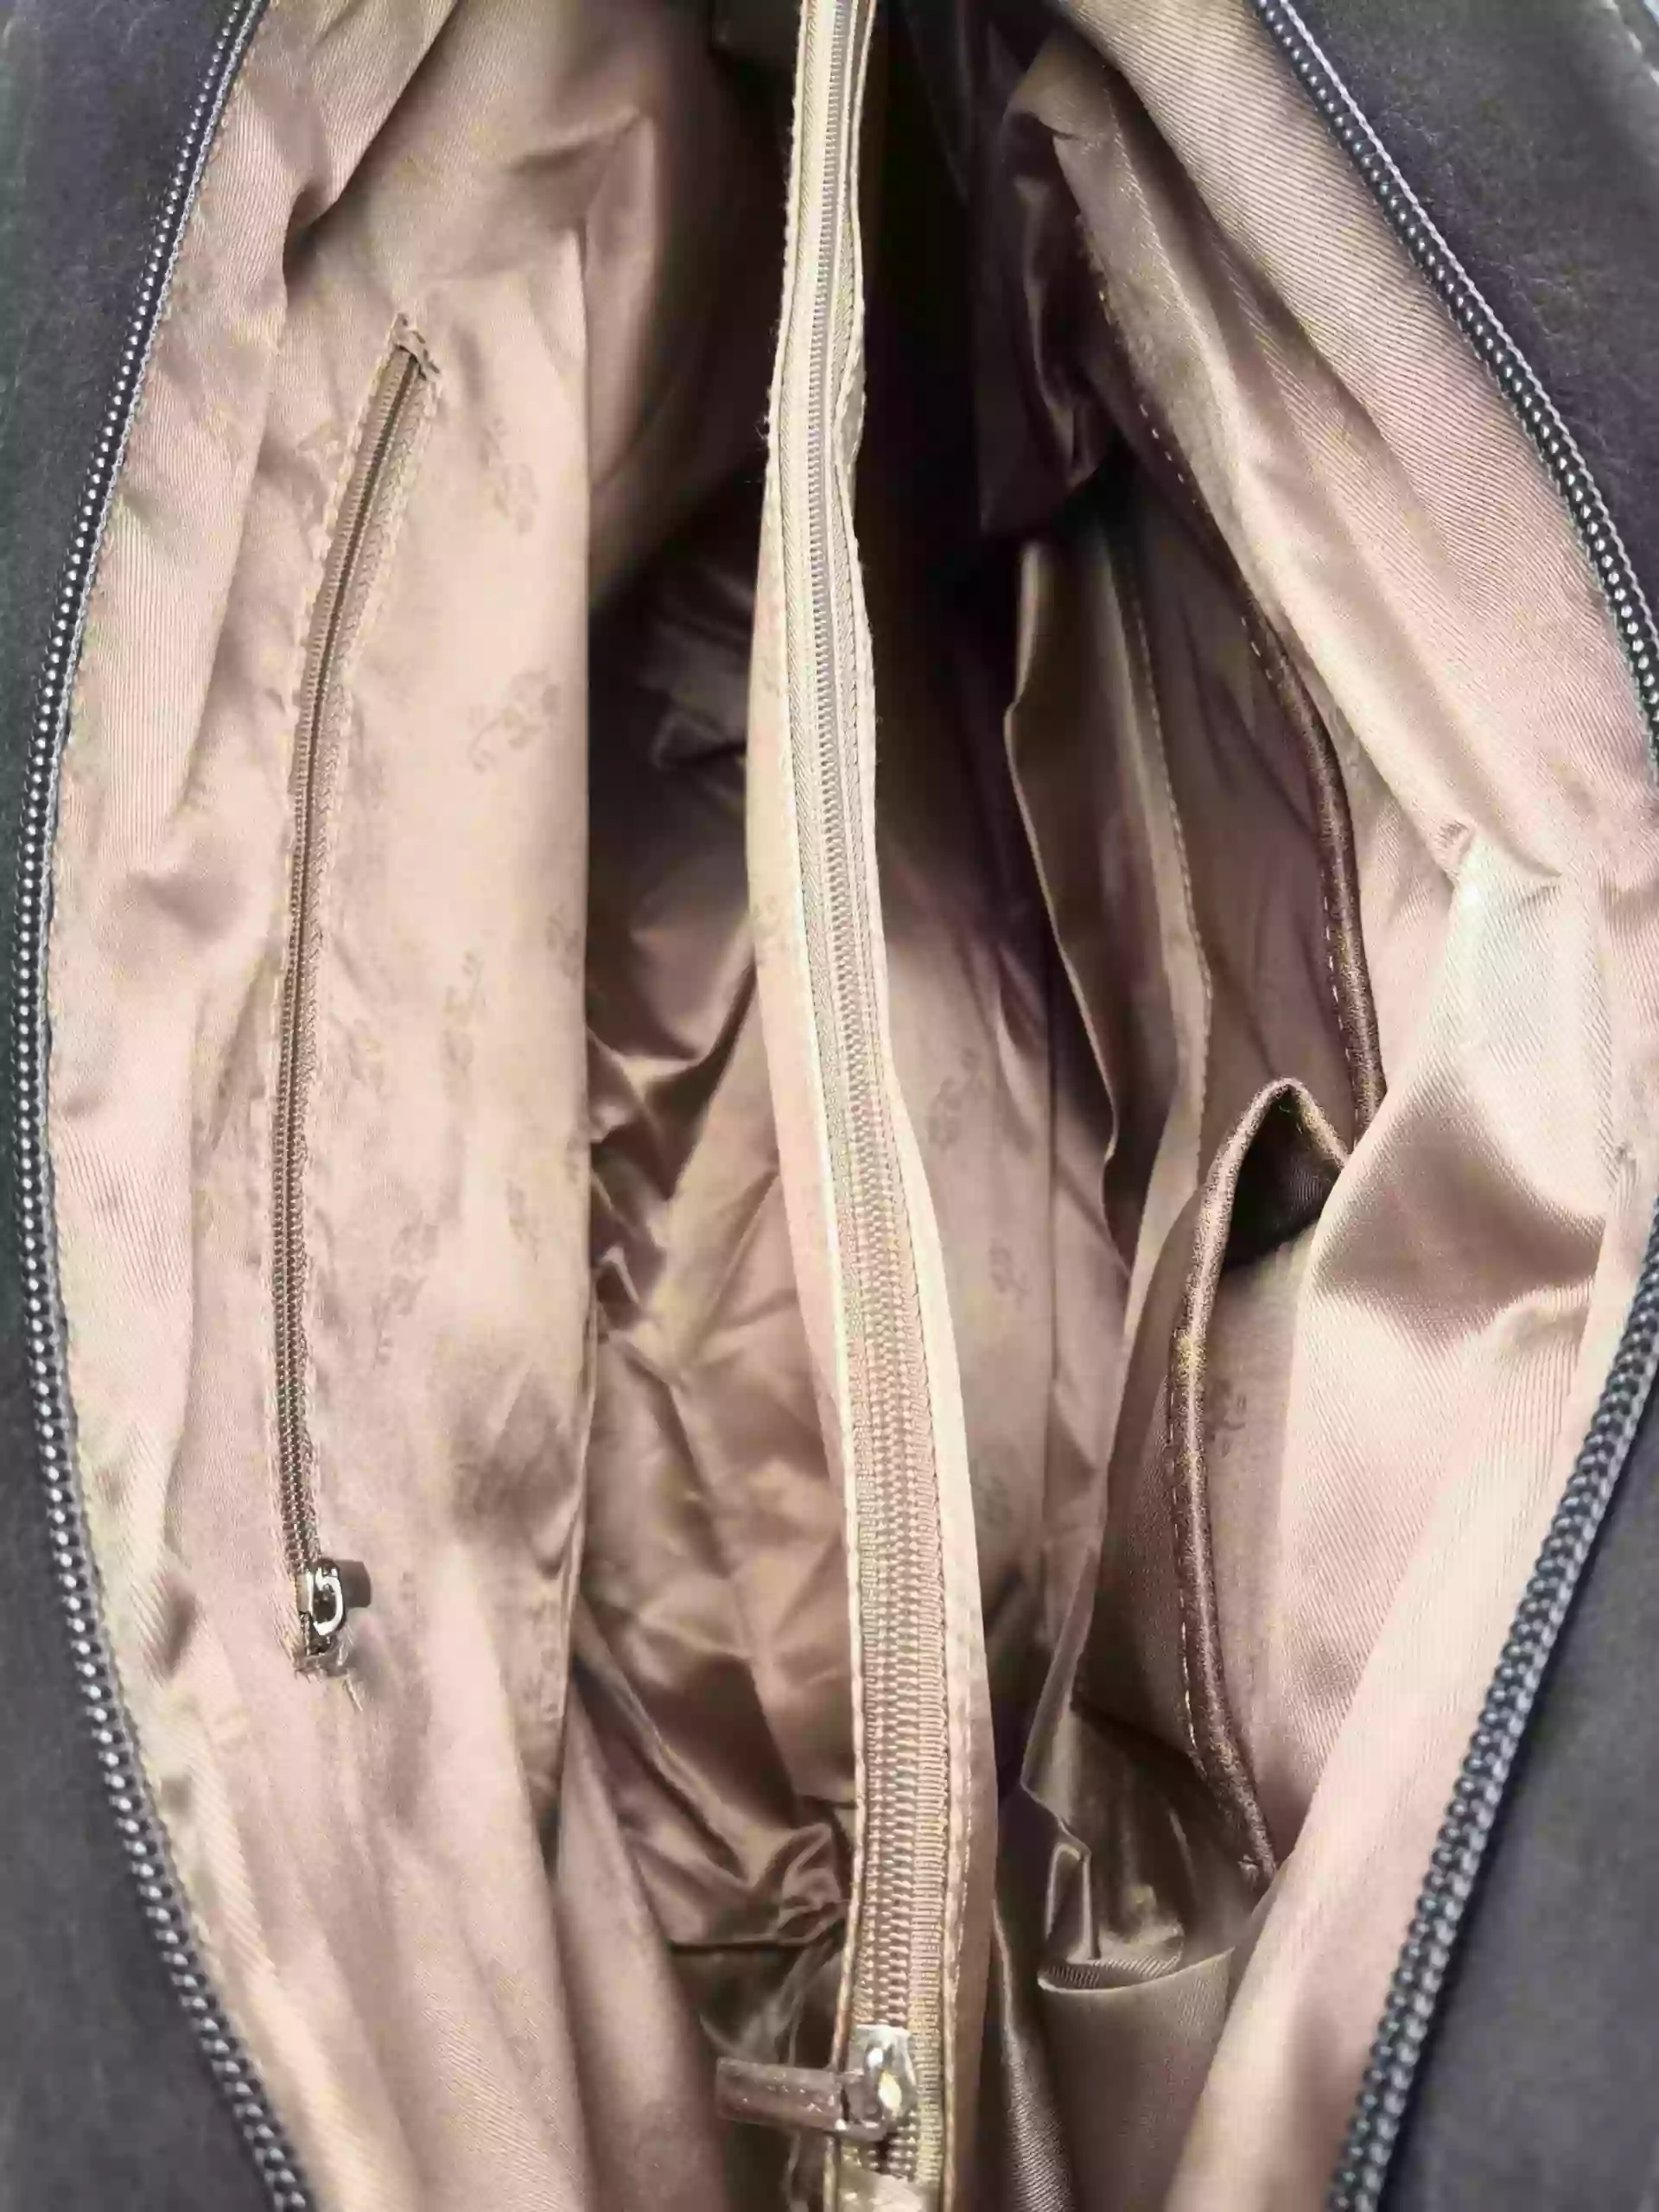 Dámská kabelka přes rameno s moderními vzory, Tapple H190027, tmavě šedá, vnitřní uspořádání kabelky